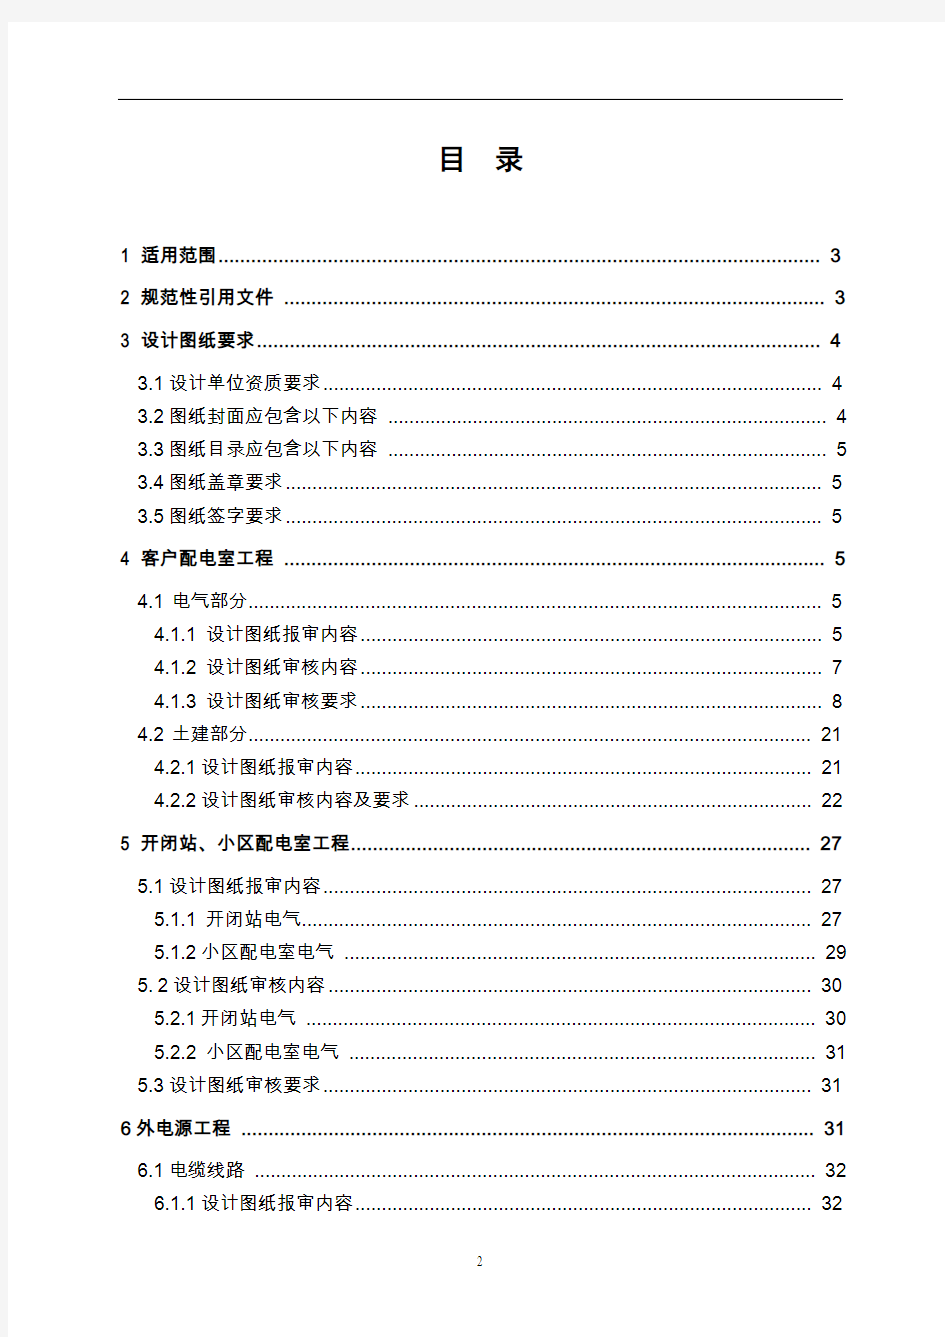 北京市电力公司10千伏及以下客户工程图纸审核标准(试行)2013-2-25